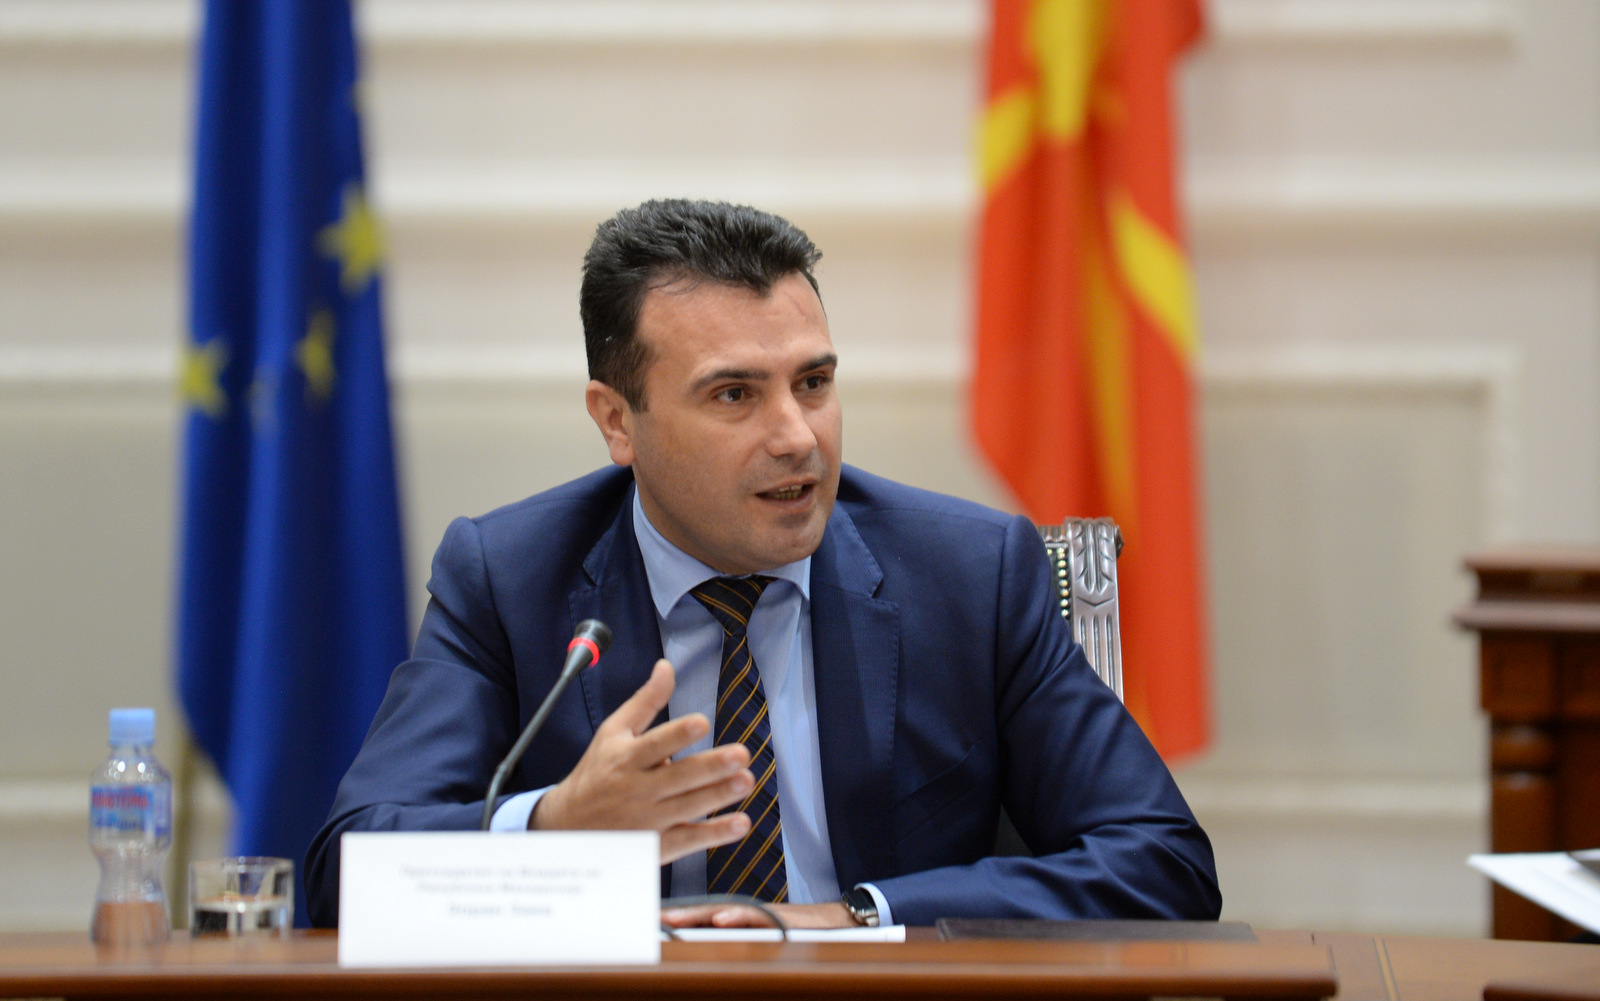 Η σκοπιανή κυβέρνηση τα “μαζεύει” μετά τις αντιδράσεις – Νέος όρος για τους “Μακεδόνες του Εξωτερικού”